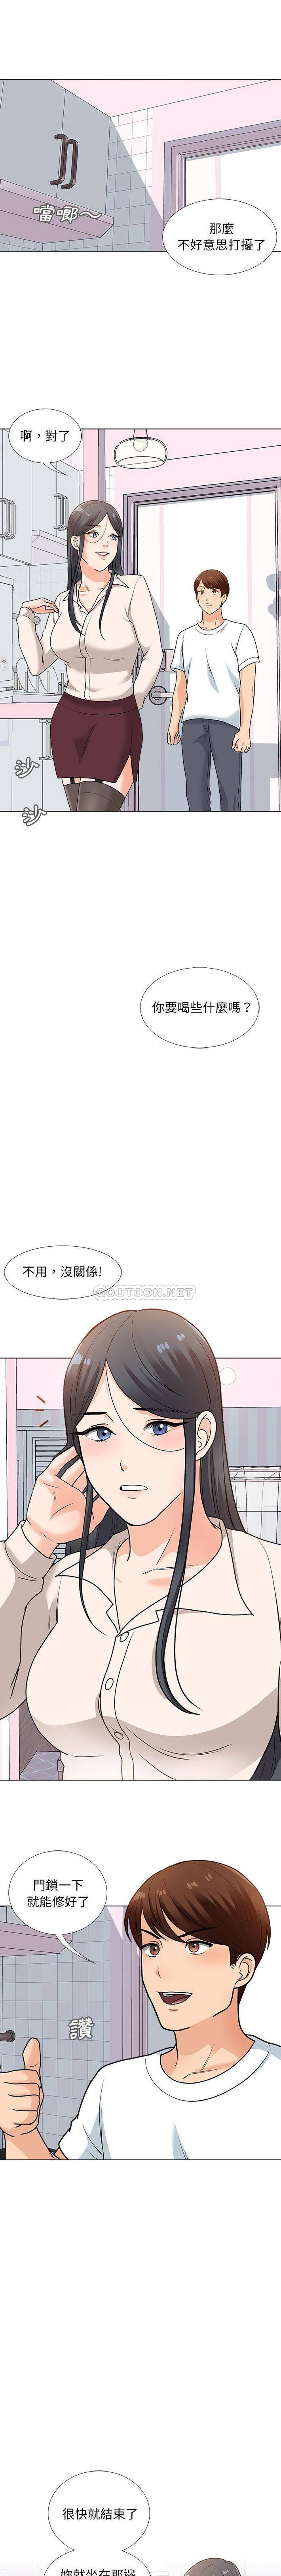 韩国污漫画 幸福公寓 第13话 1